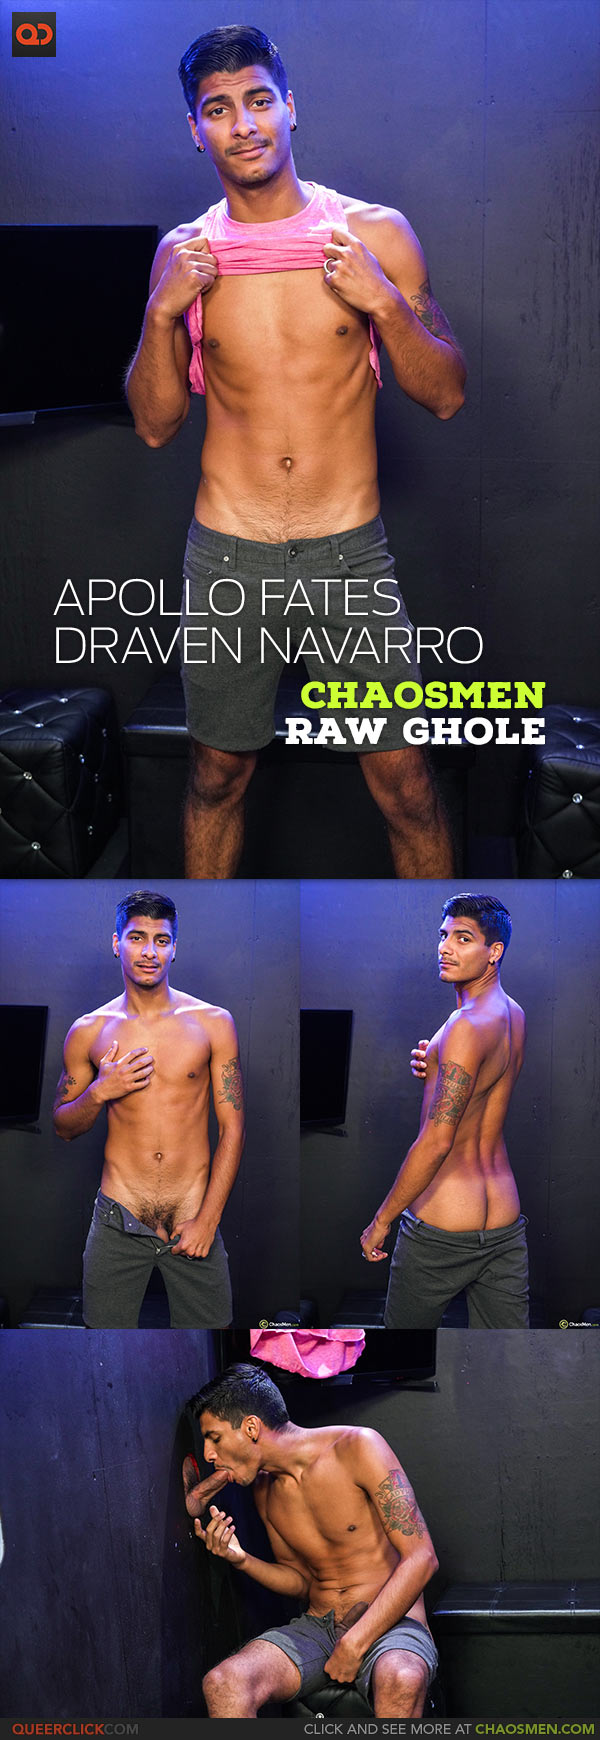 ChaosMen: Apollo Fates and Draven Navarro - Gloryhole Raw